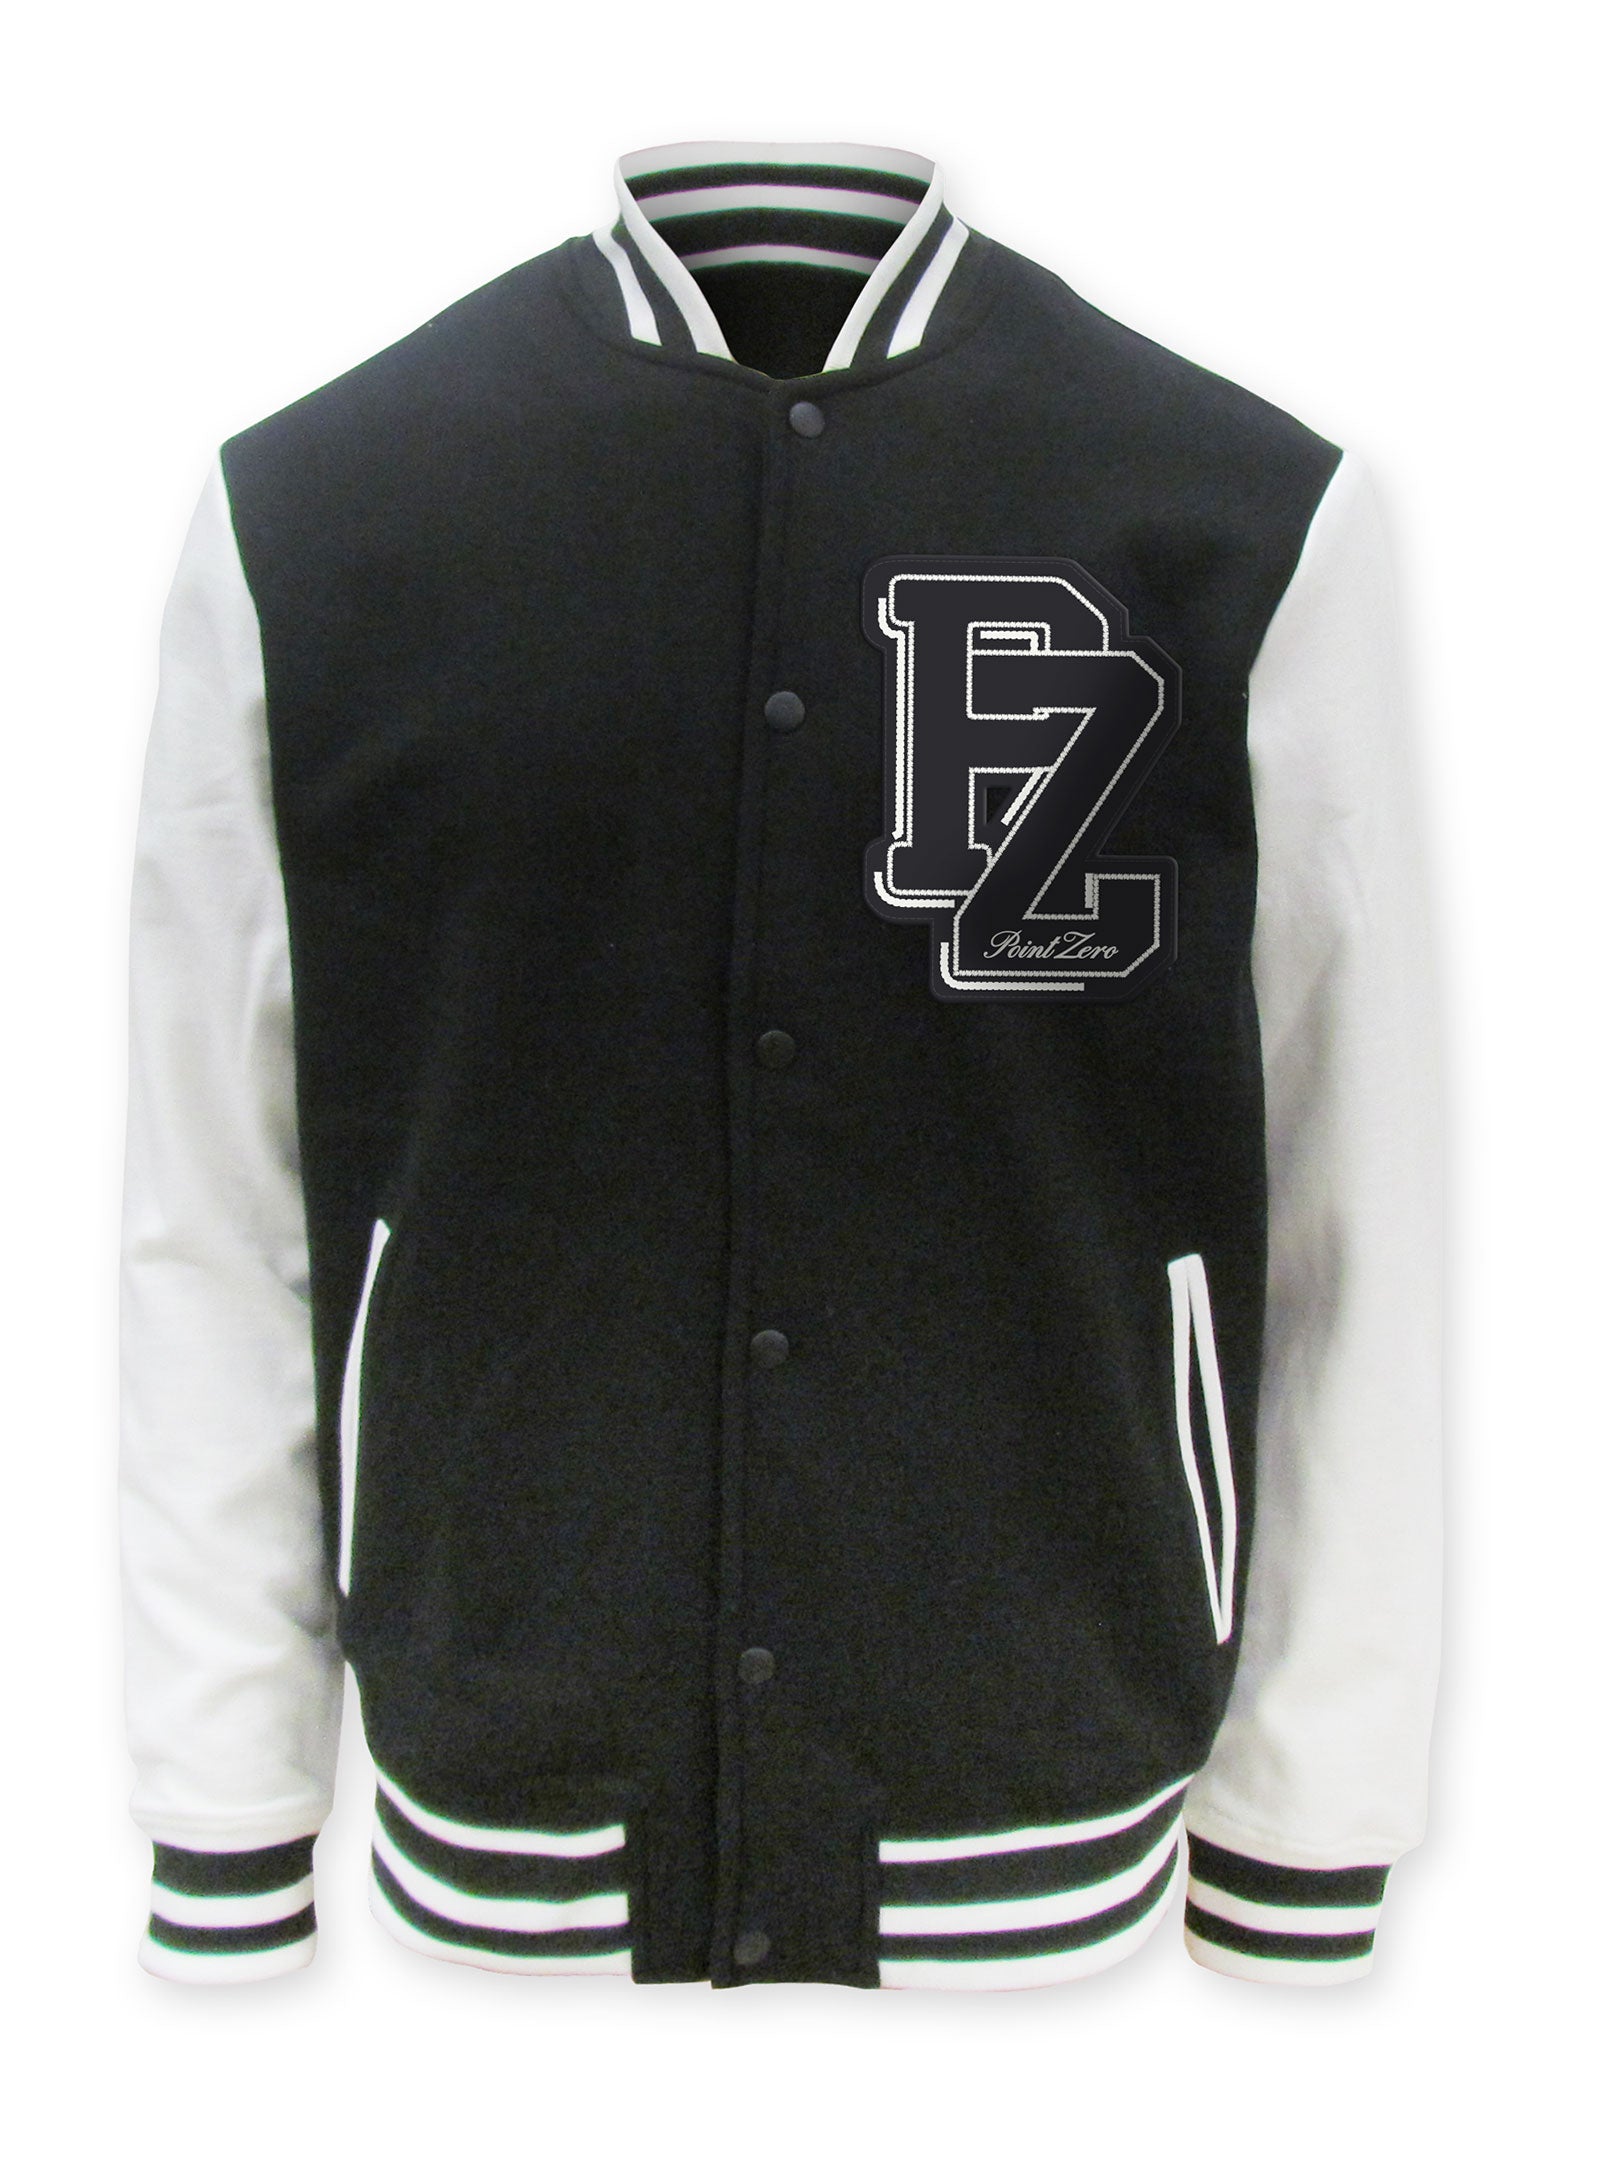 YORKDALE | Unisex limited edition varsity fleece jacket